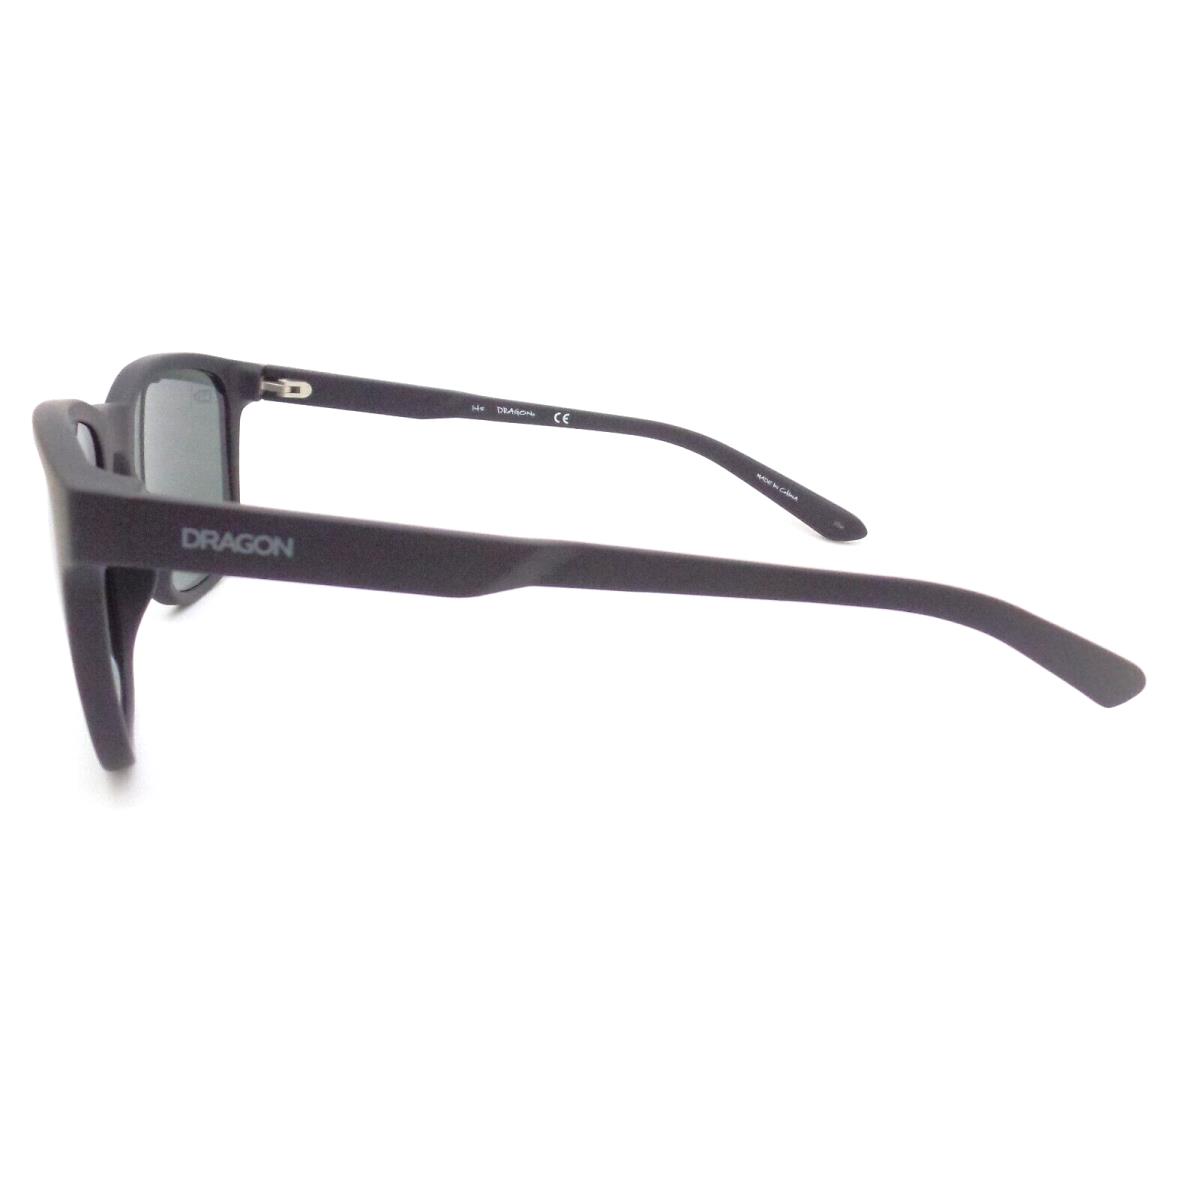 Dragon Unisex Clover Sunglasses - Matte Black Frame | LL Smoke